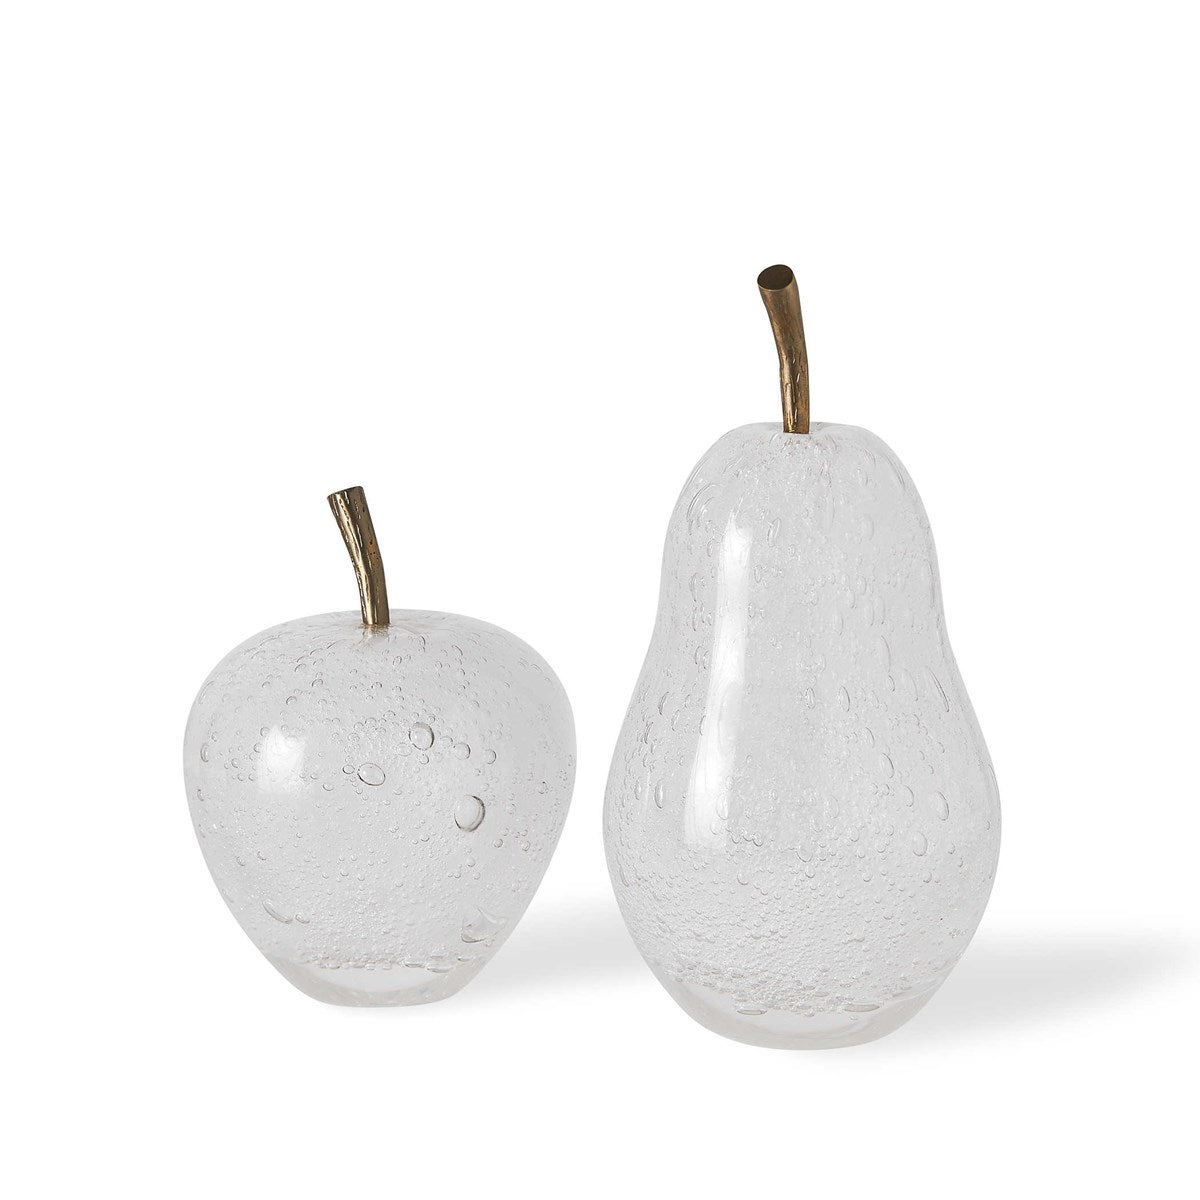 Adorno Apple & Pear S/2